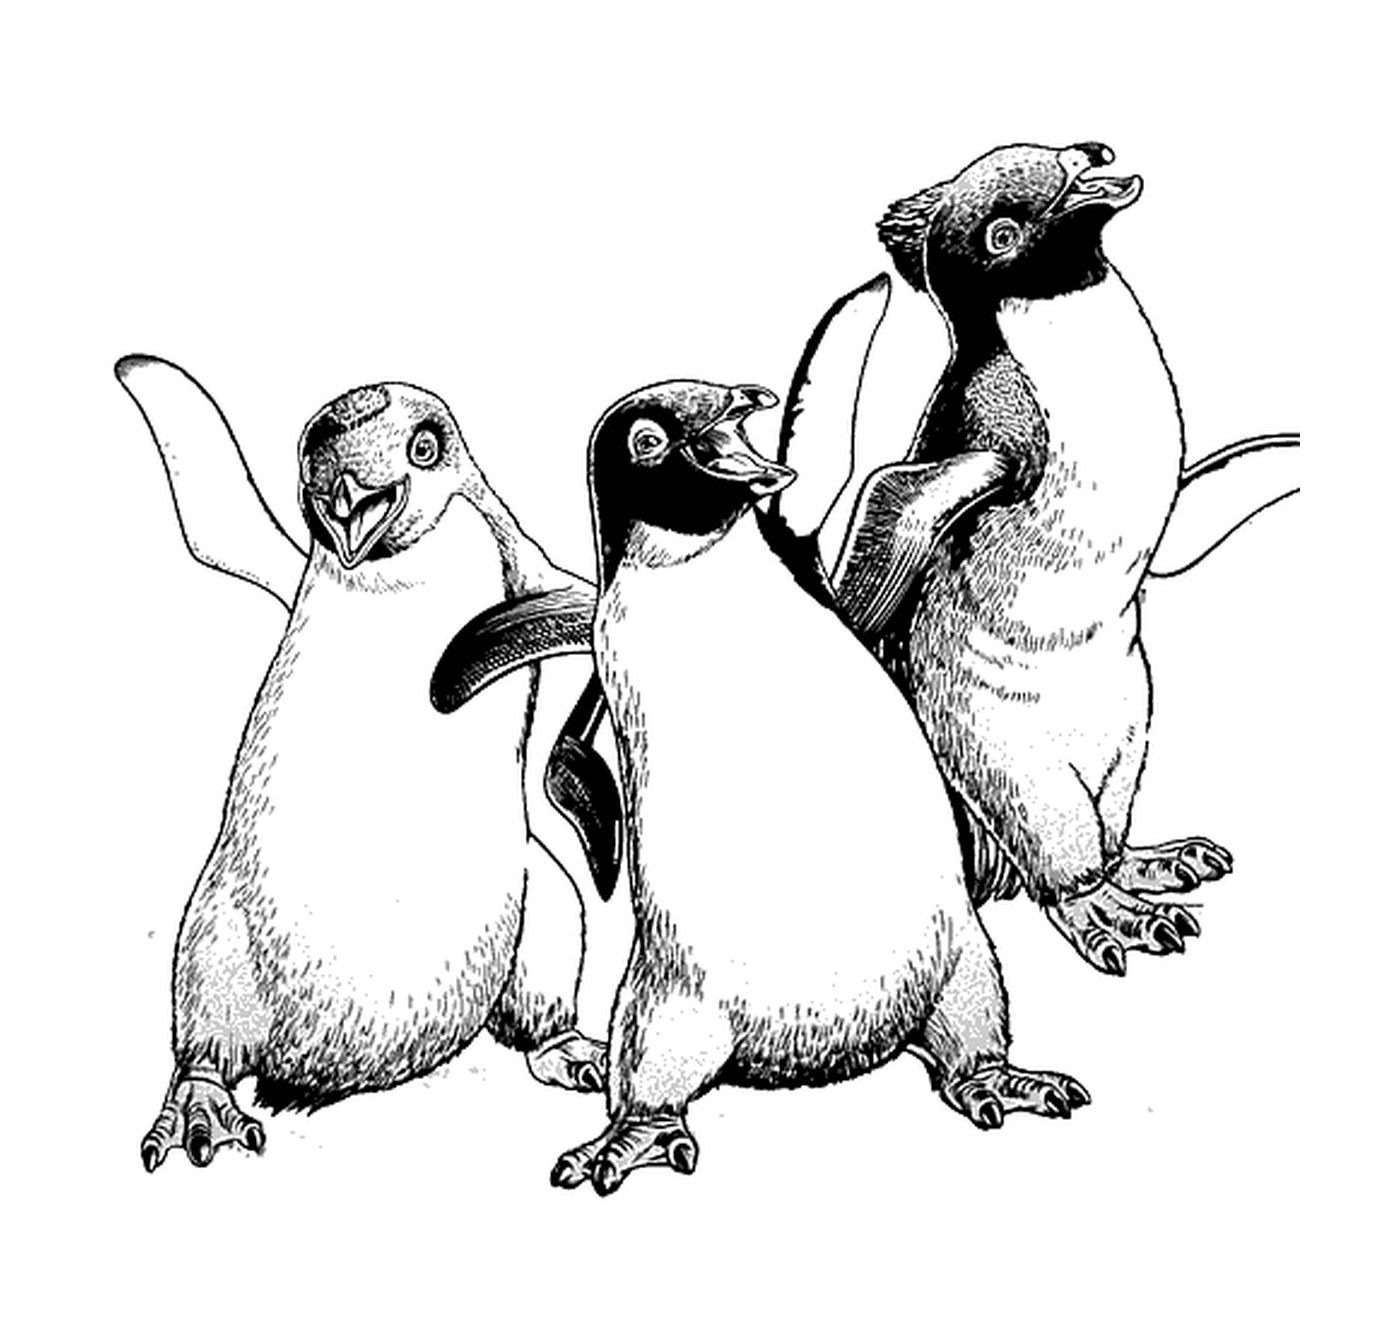  Группа трех пингвинов бок о бок 